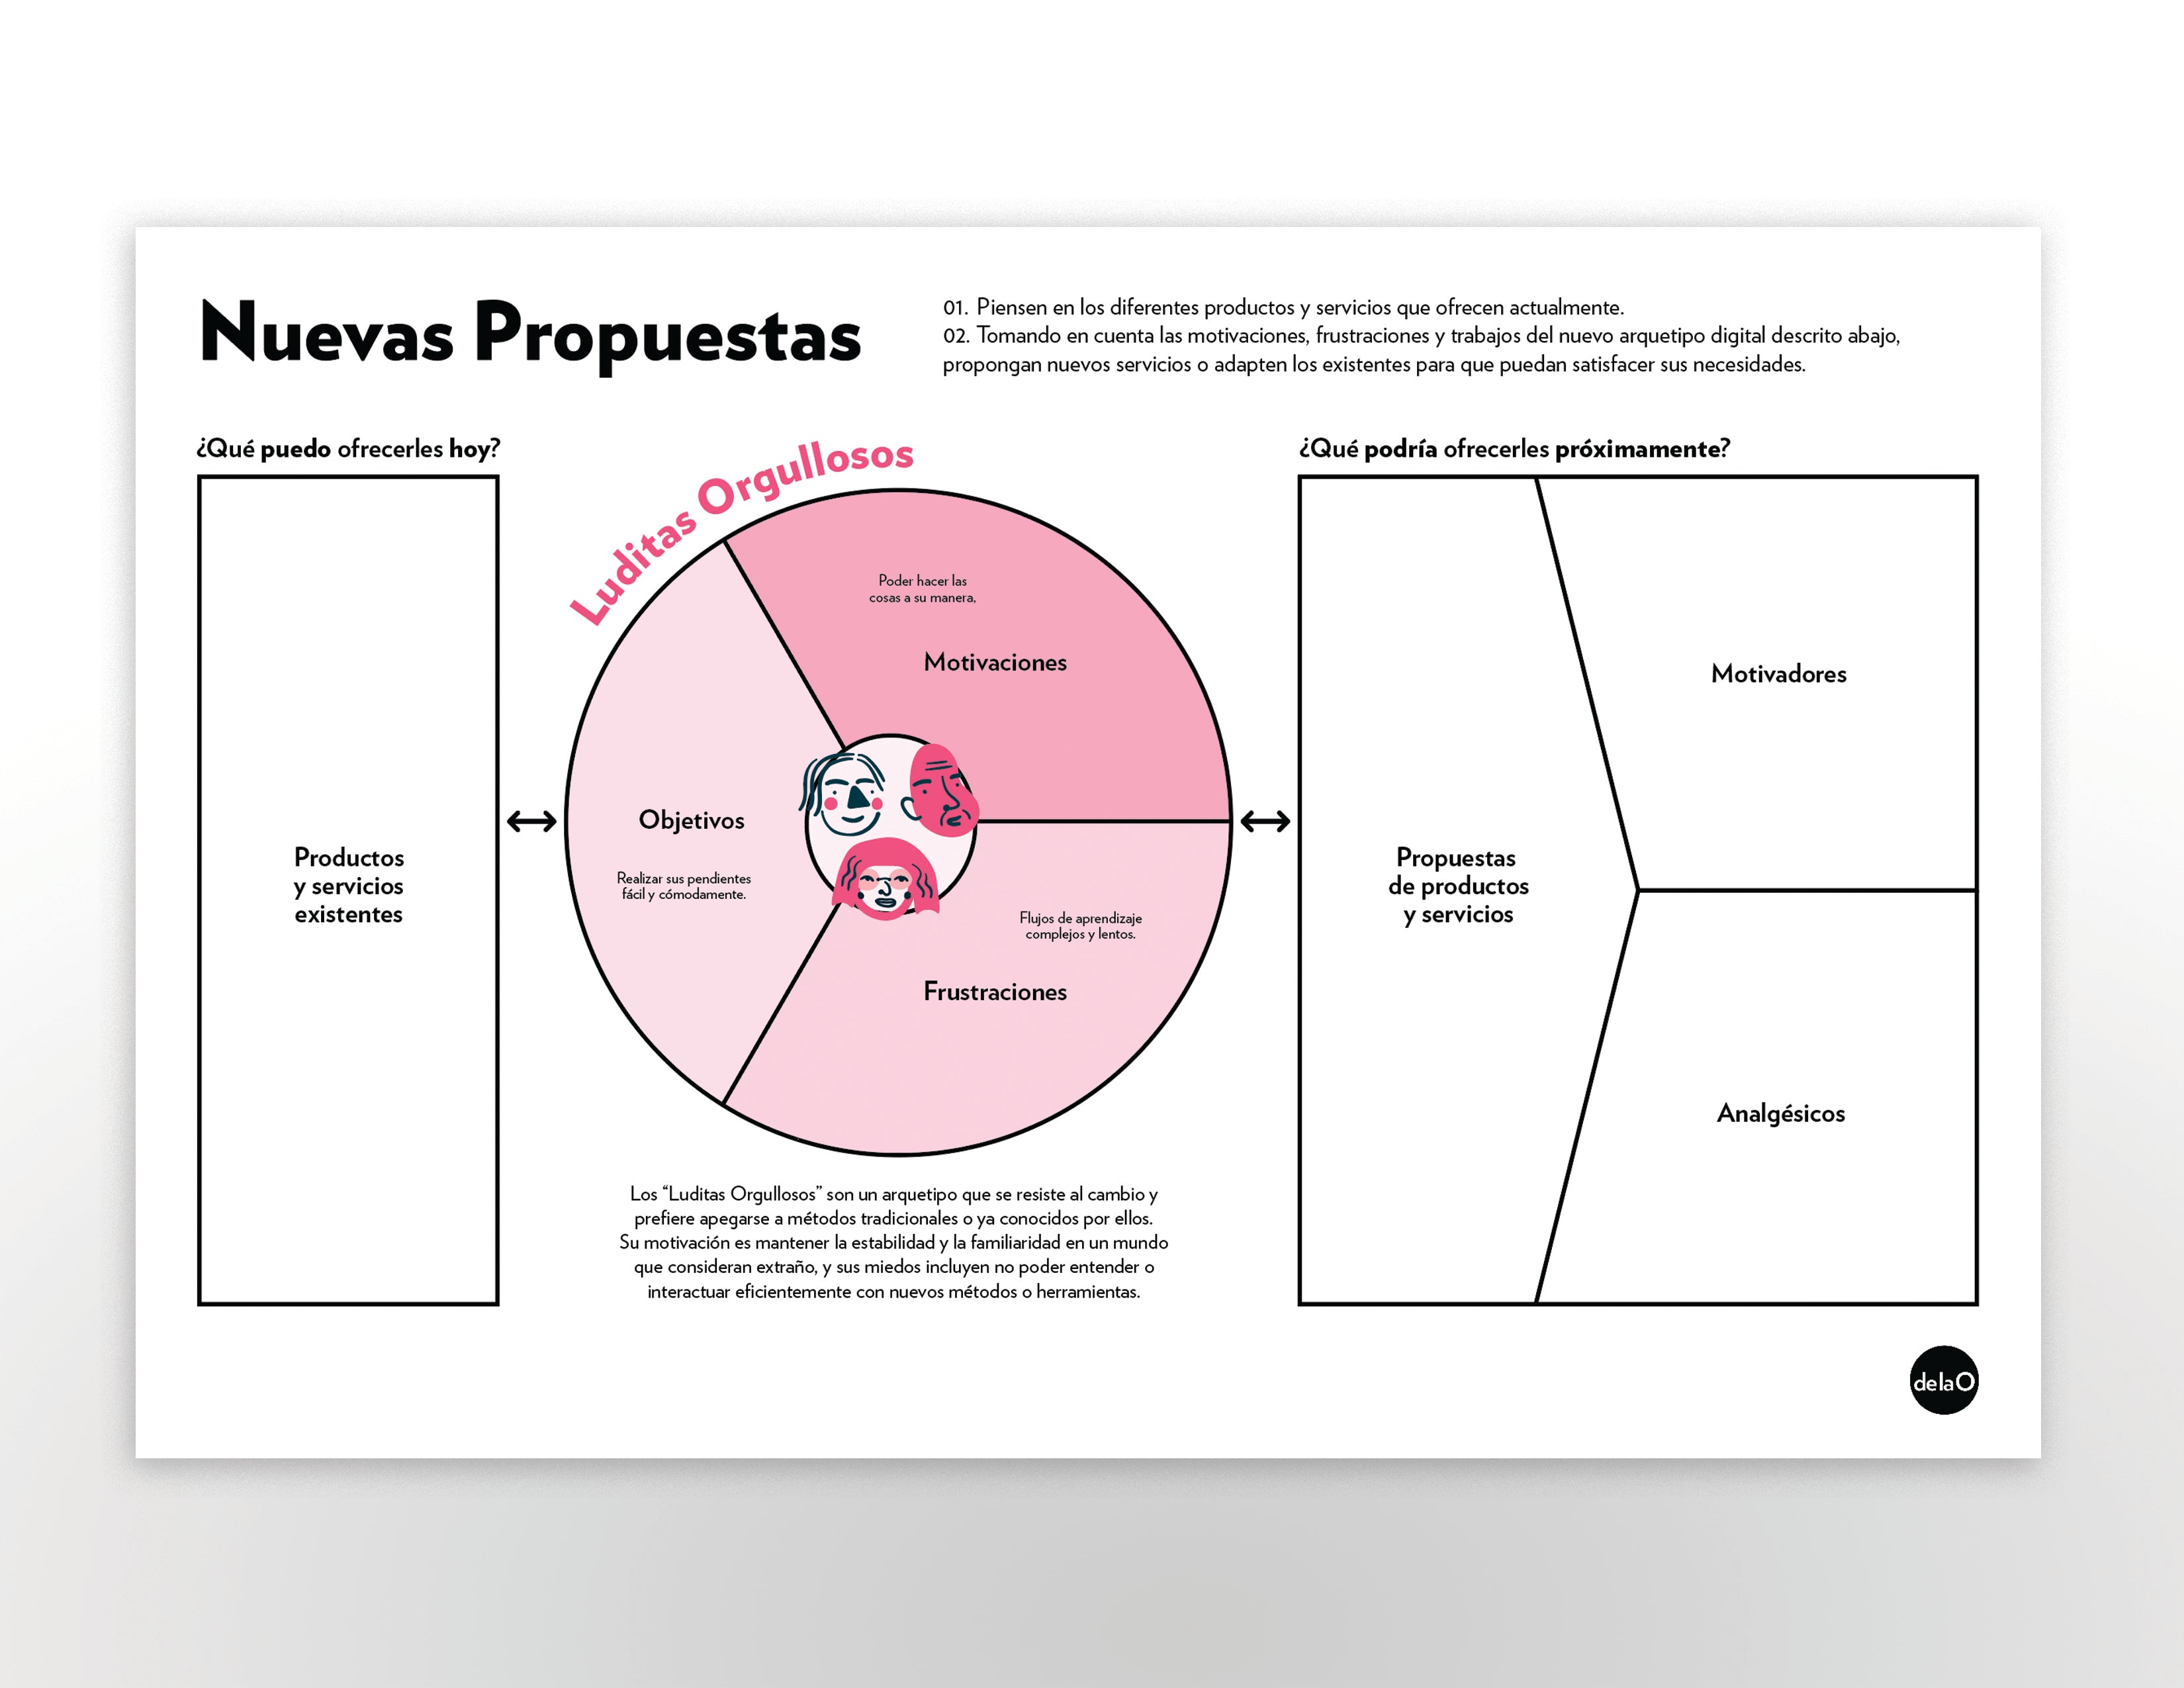 NUEVOS ARQUETIPOS DIGITALES EN MÉXICO:  Reporte + Seminario Online